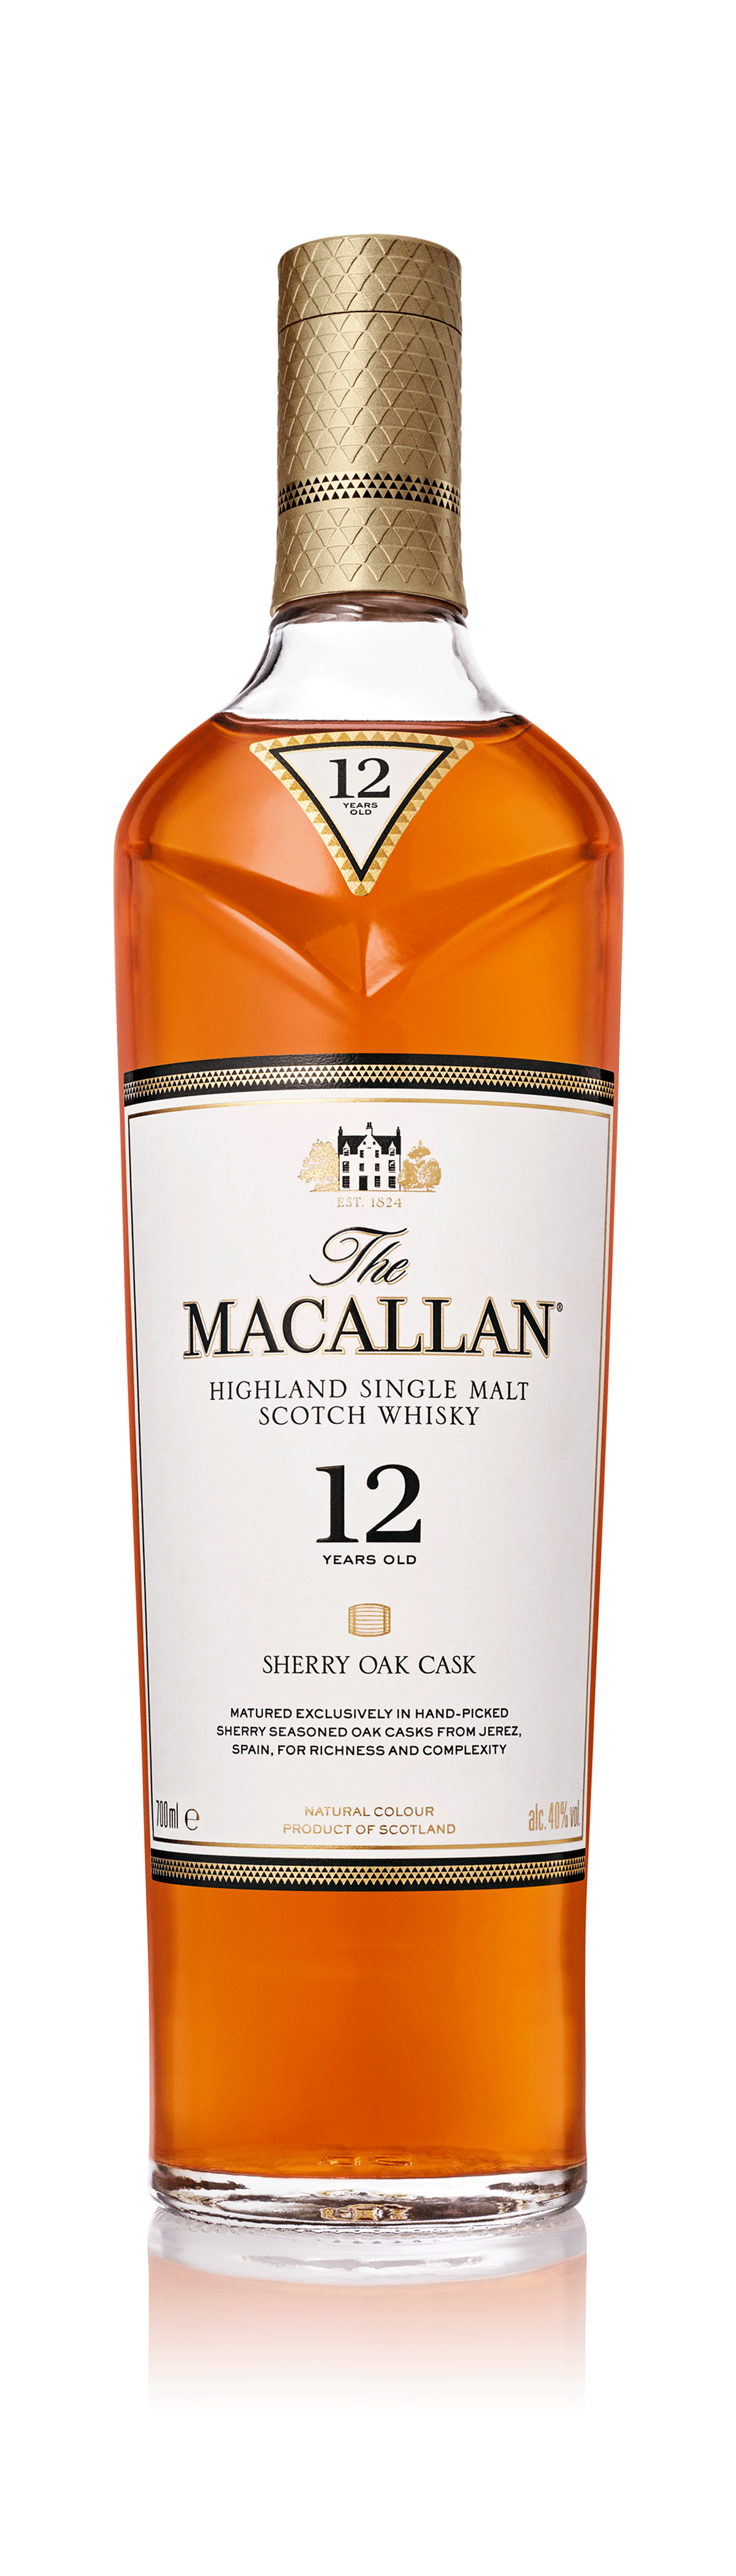 The Macallan 12yo Sherry Cask